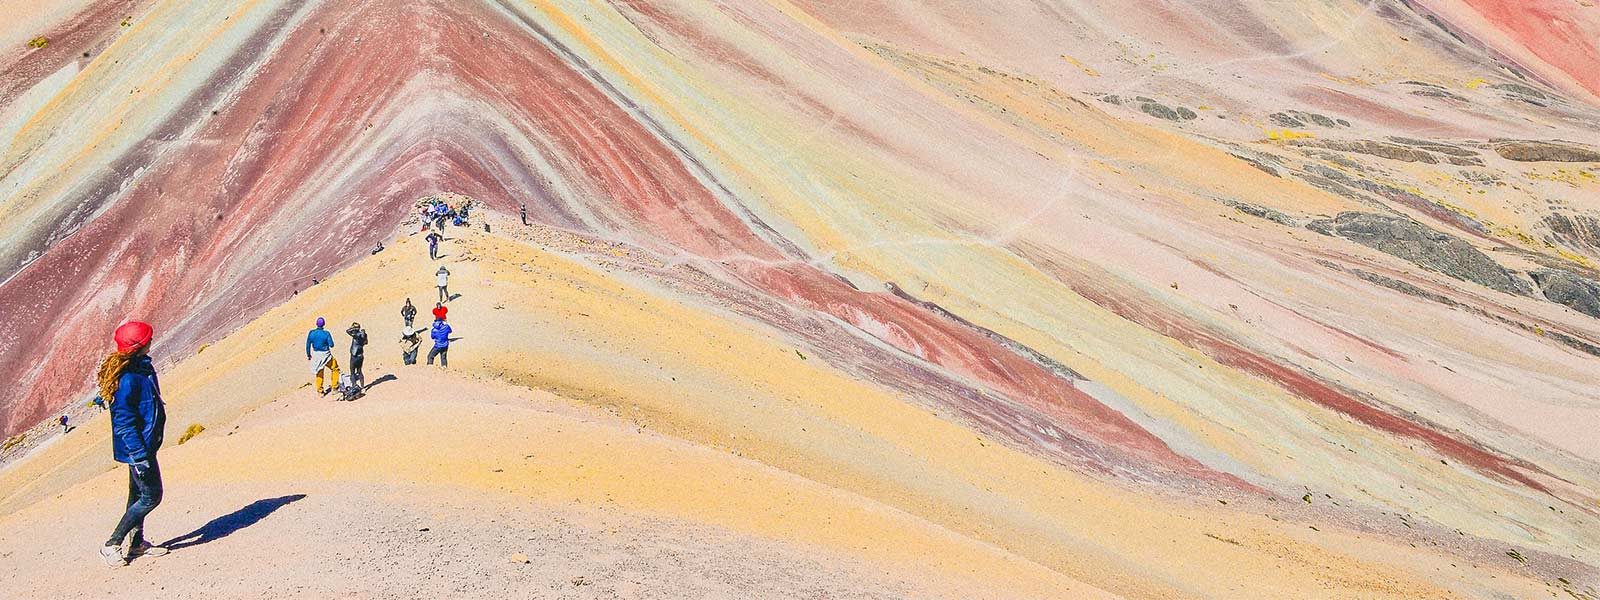 De prachtige kleuren van de regenboog berg in Peru